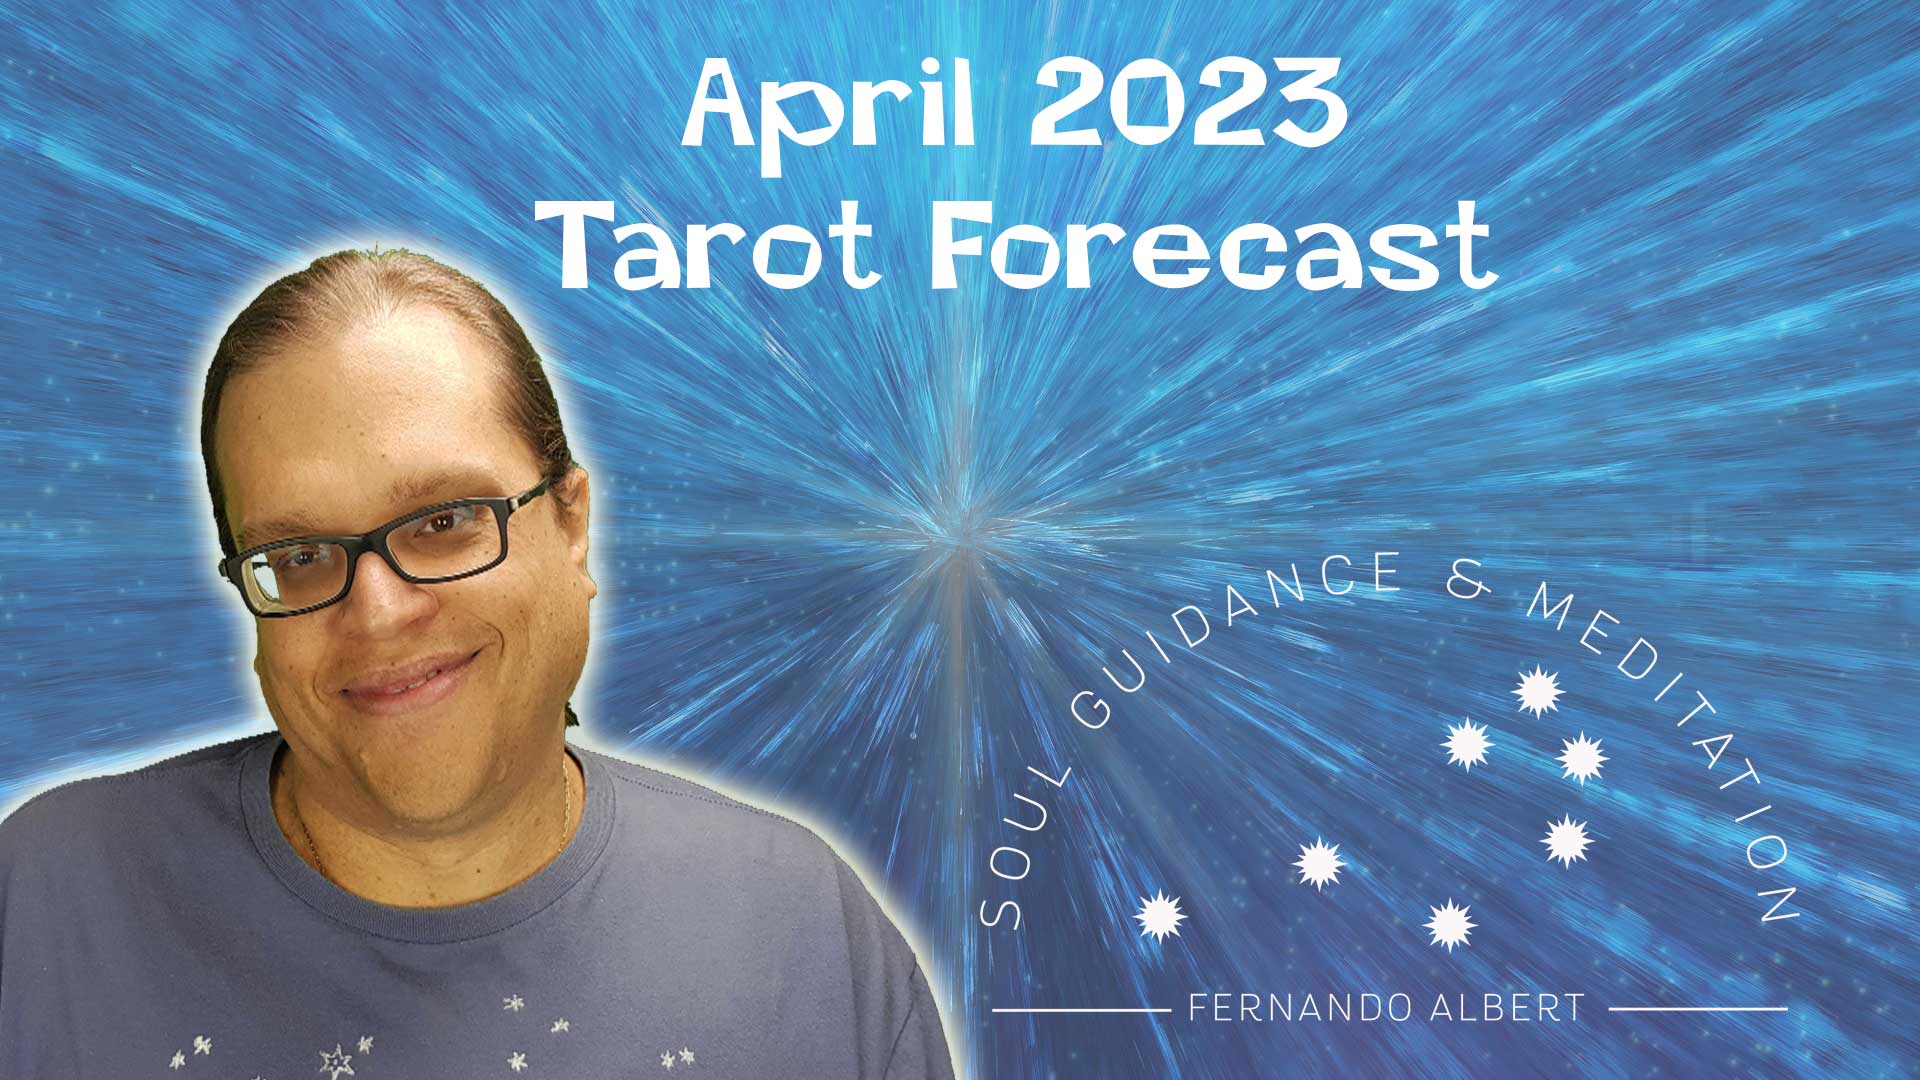 April 2023 Forecast